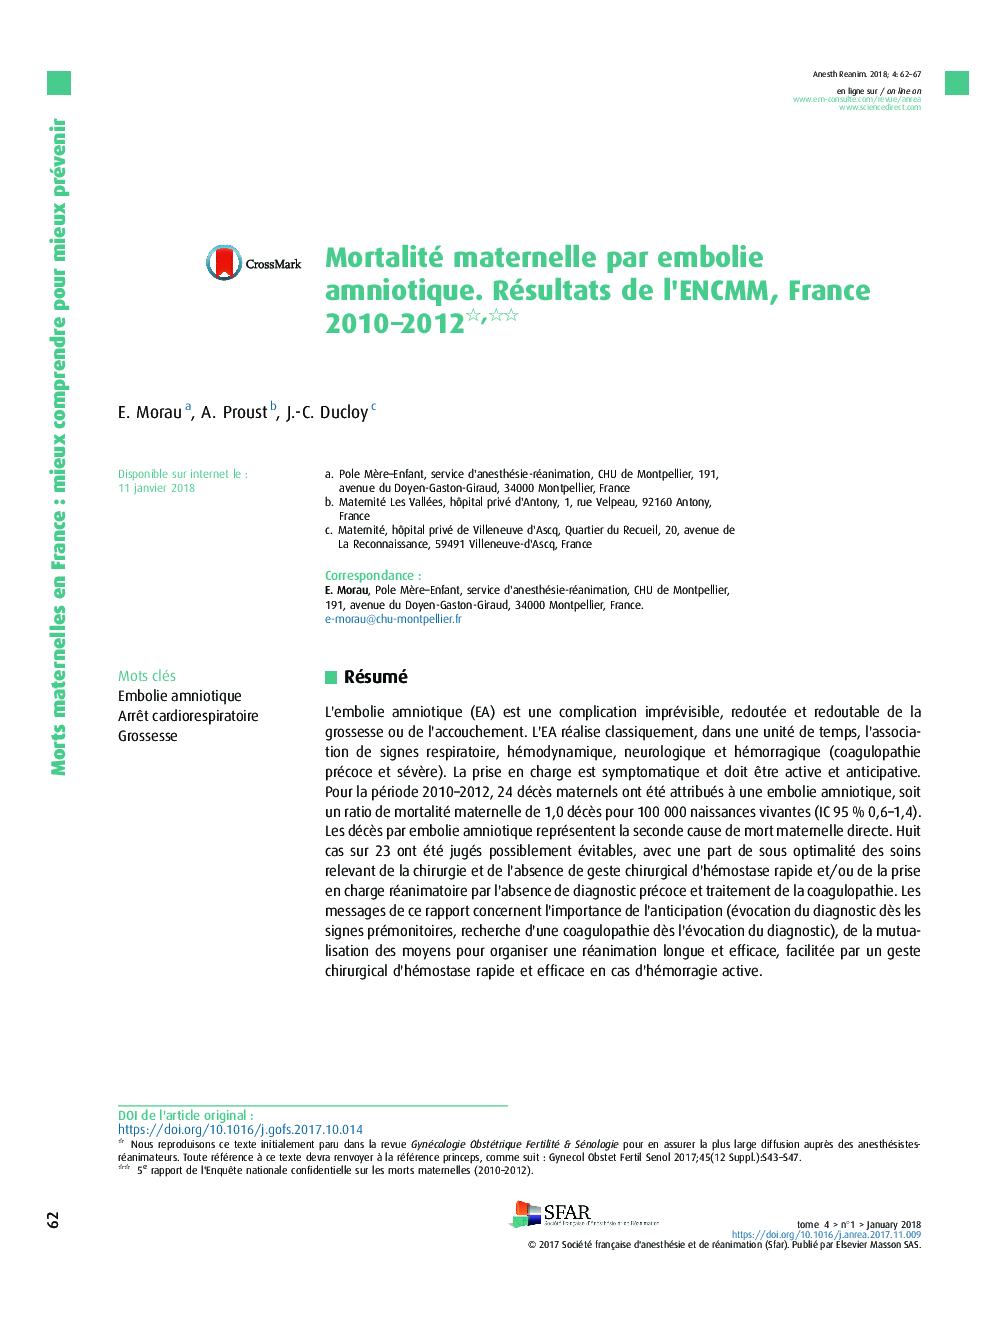 Mortalité maternelle par embolie amniotique. Résultats de l'ENCMM, France 2010-2012